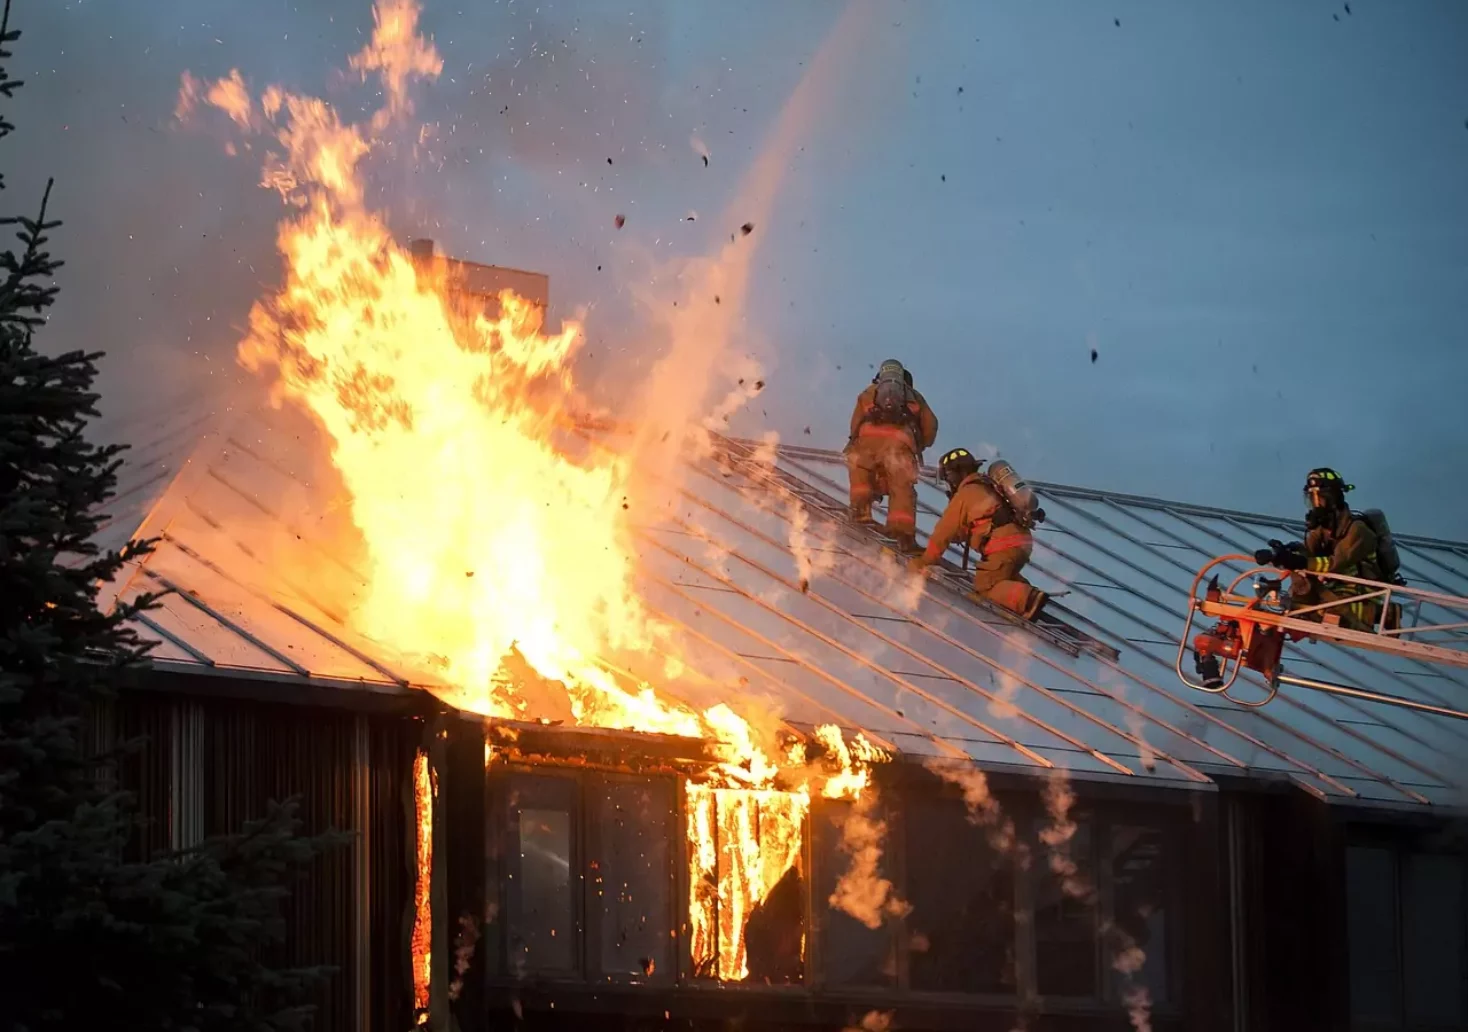 Gebäude brannte lichterloh: Florianis kämpften gegen die Flammen